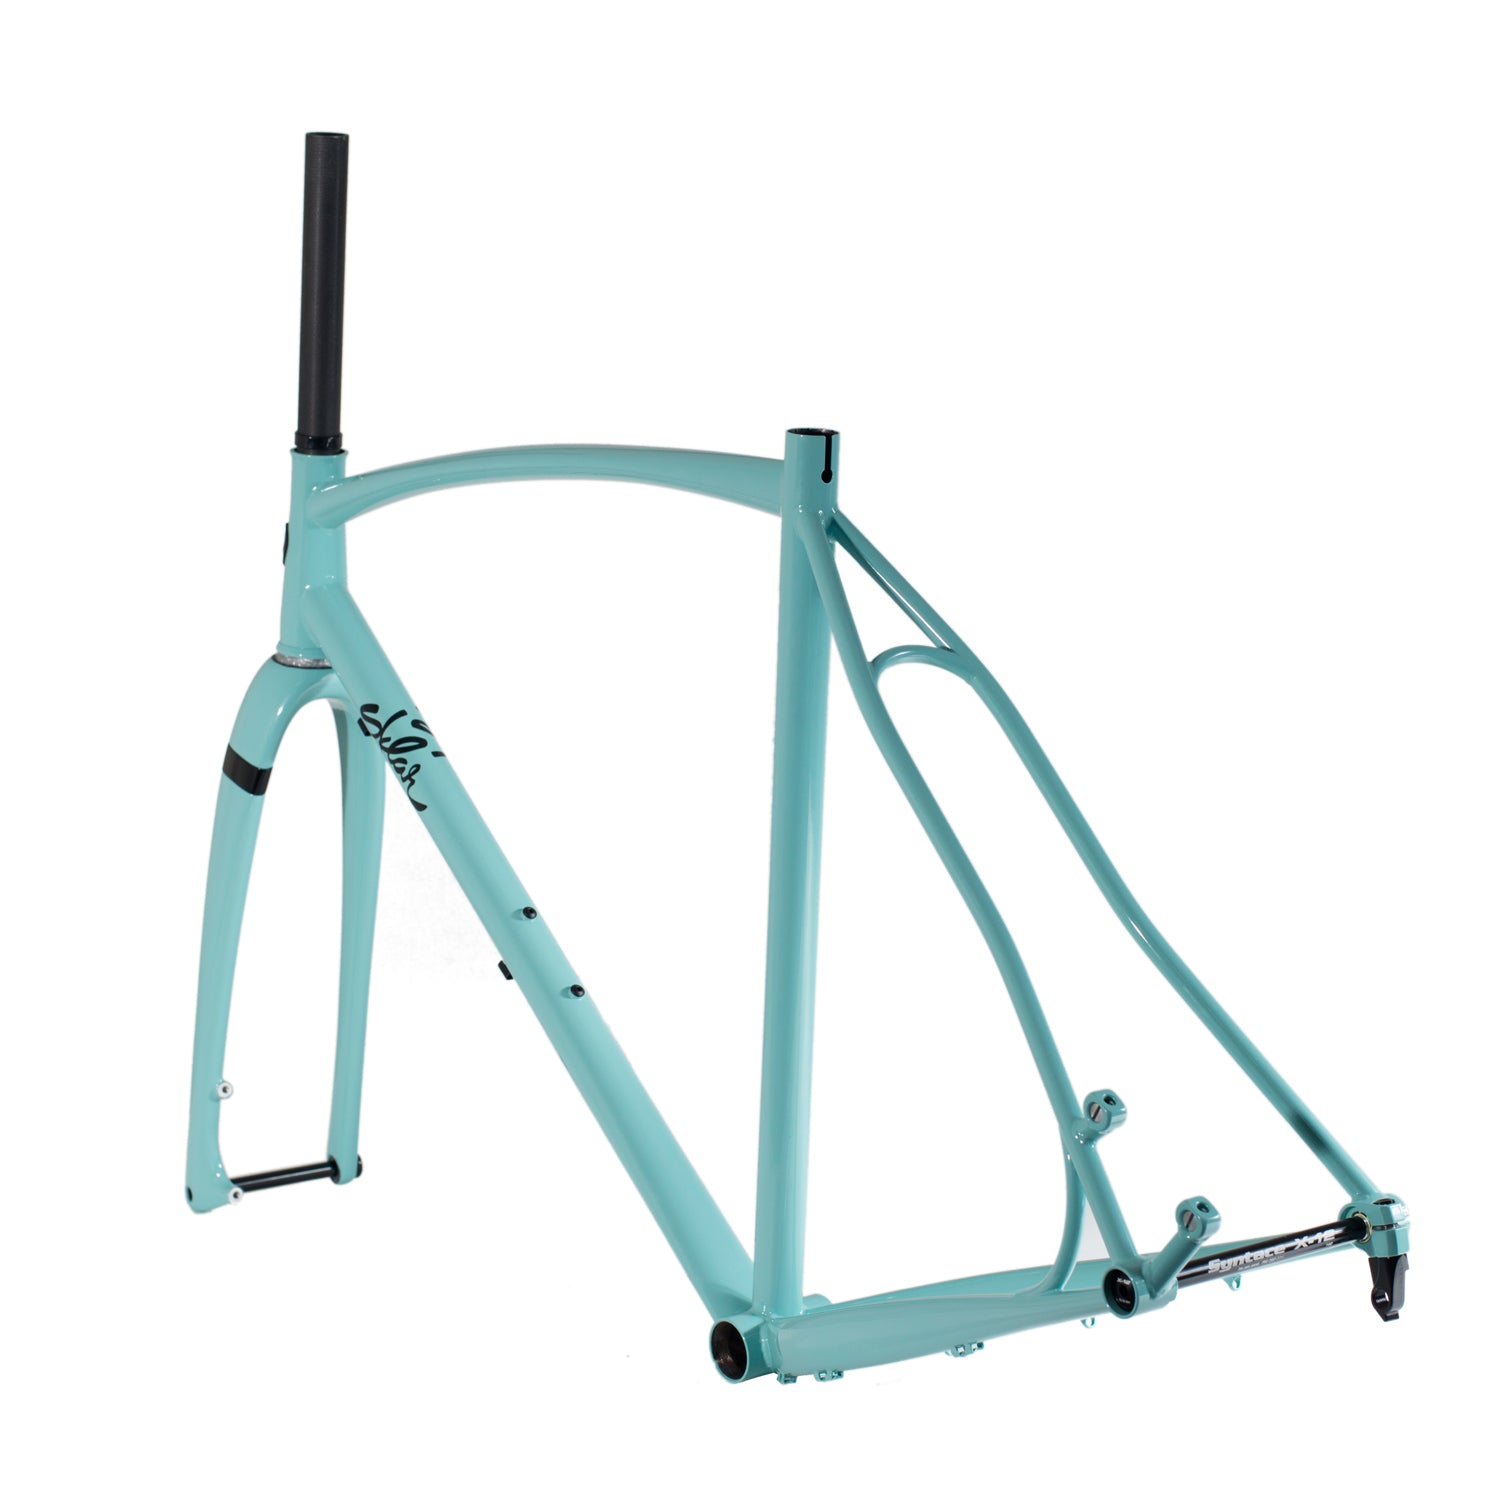 SKLAR BIKES CX / All Road – Pastel Turquoise – 54cm